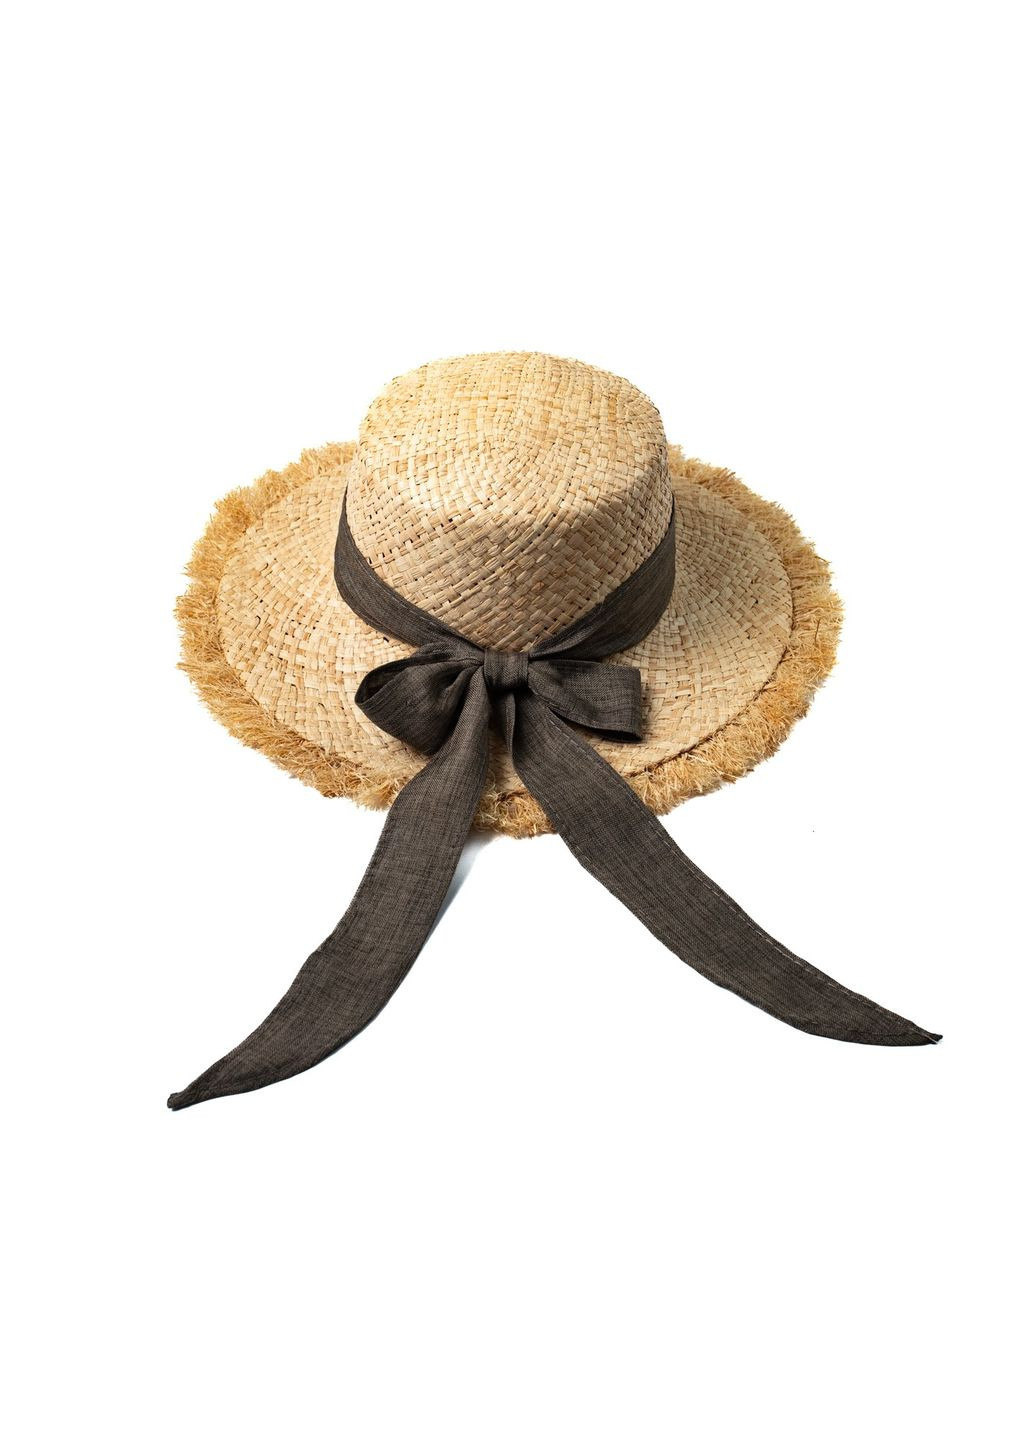 Шляпа канотье женская рафия желтая ЛАЛИ LuckyLOOK 444-522 (292668865)